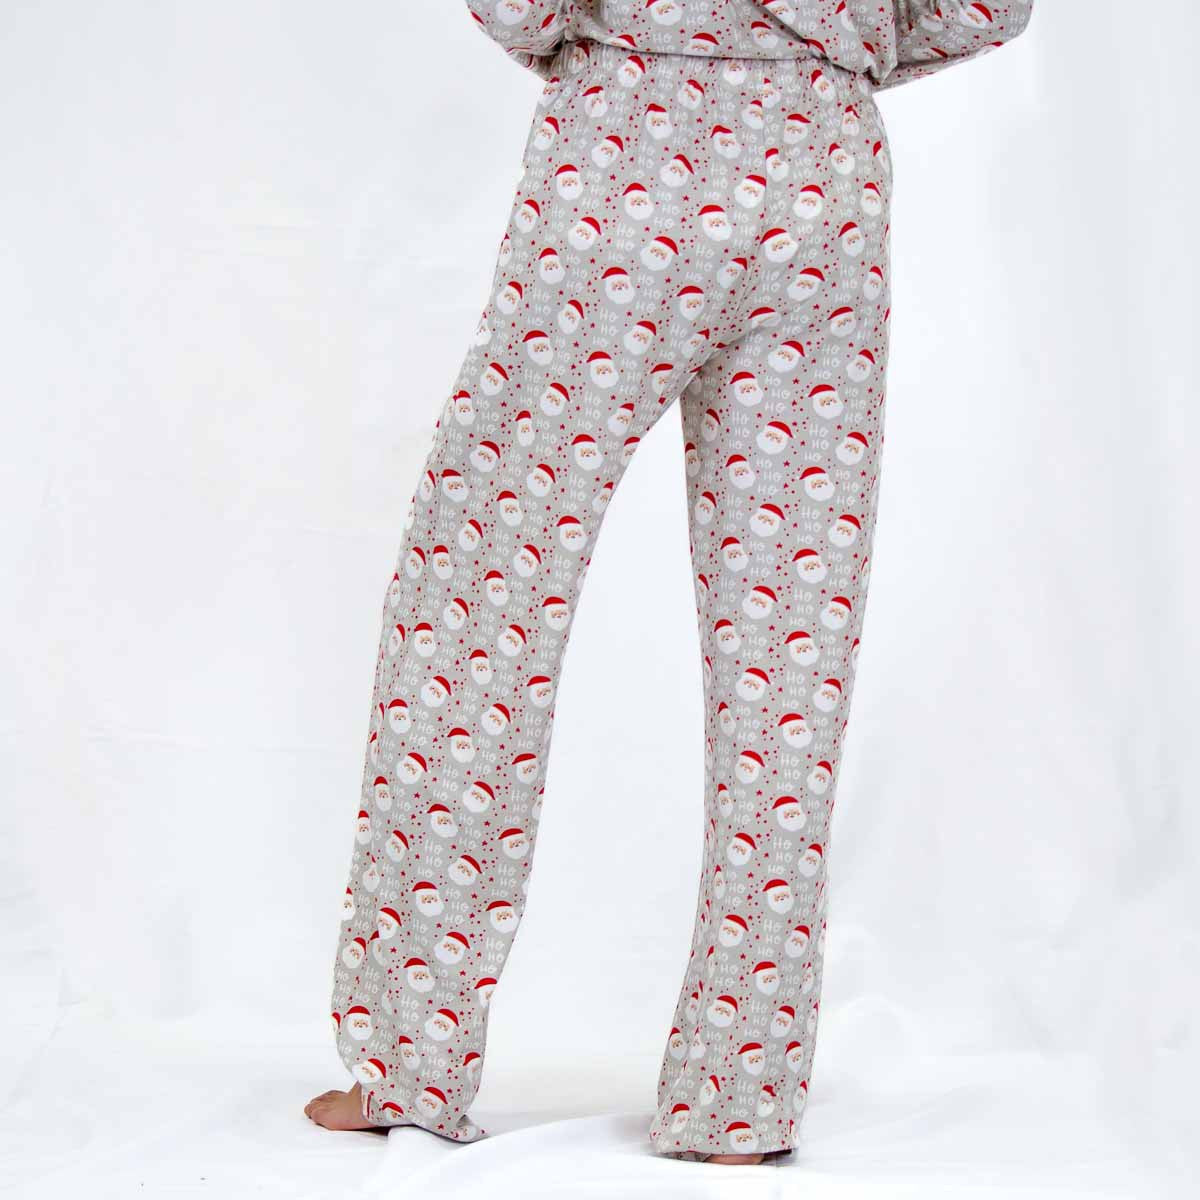 Cheerful Santa Sleep Pants